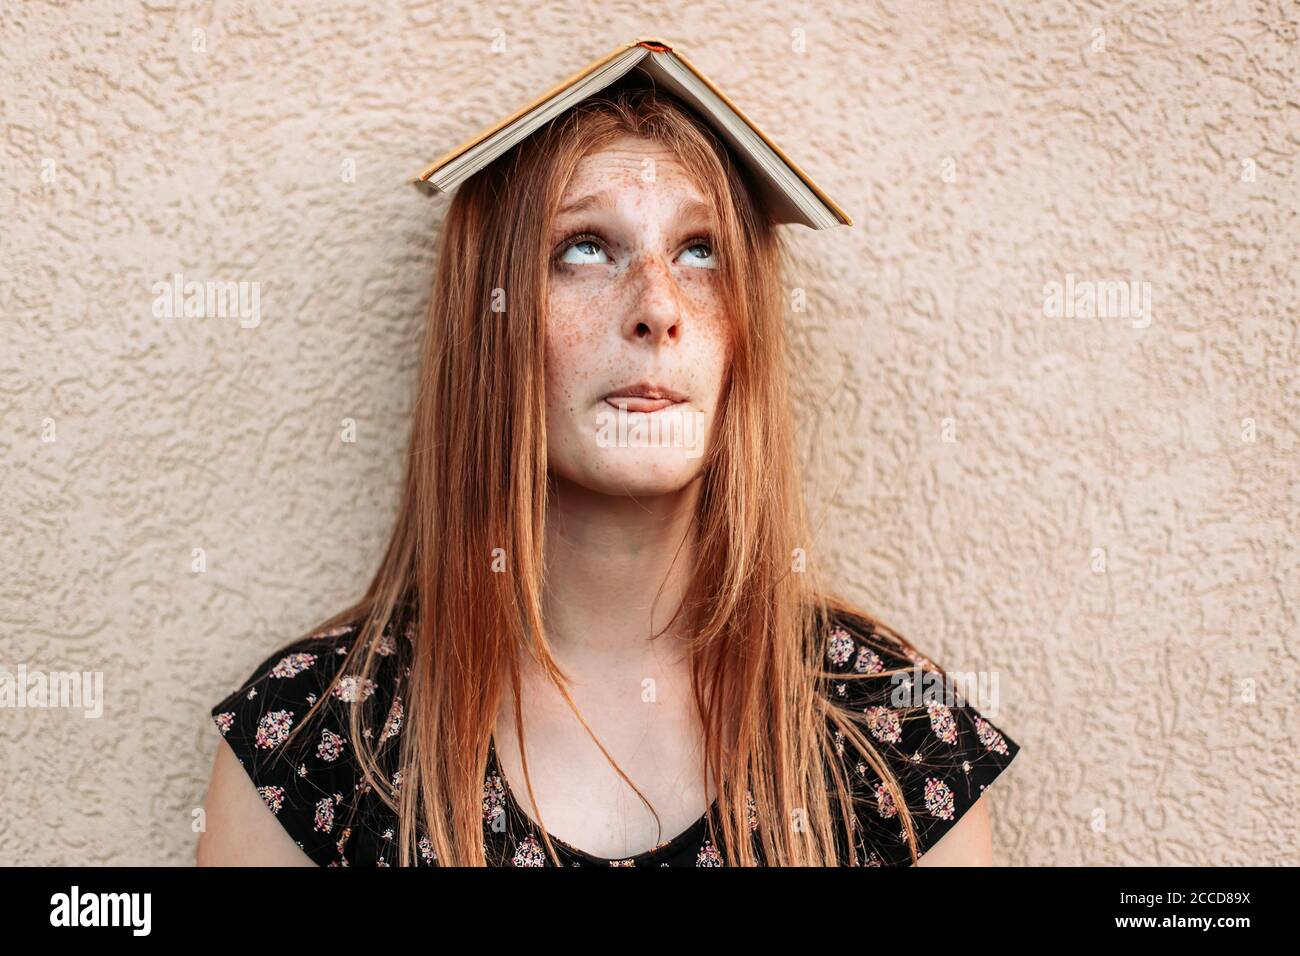 Teen Ingwer Student Mädchen mit einem Buch auf dem Kopf, Blick auf sie mit lustigen Gesichtsausdruck. Probleme beim Lernen, Schwierigkeiten Stockfoto